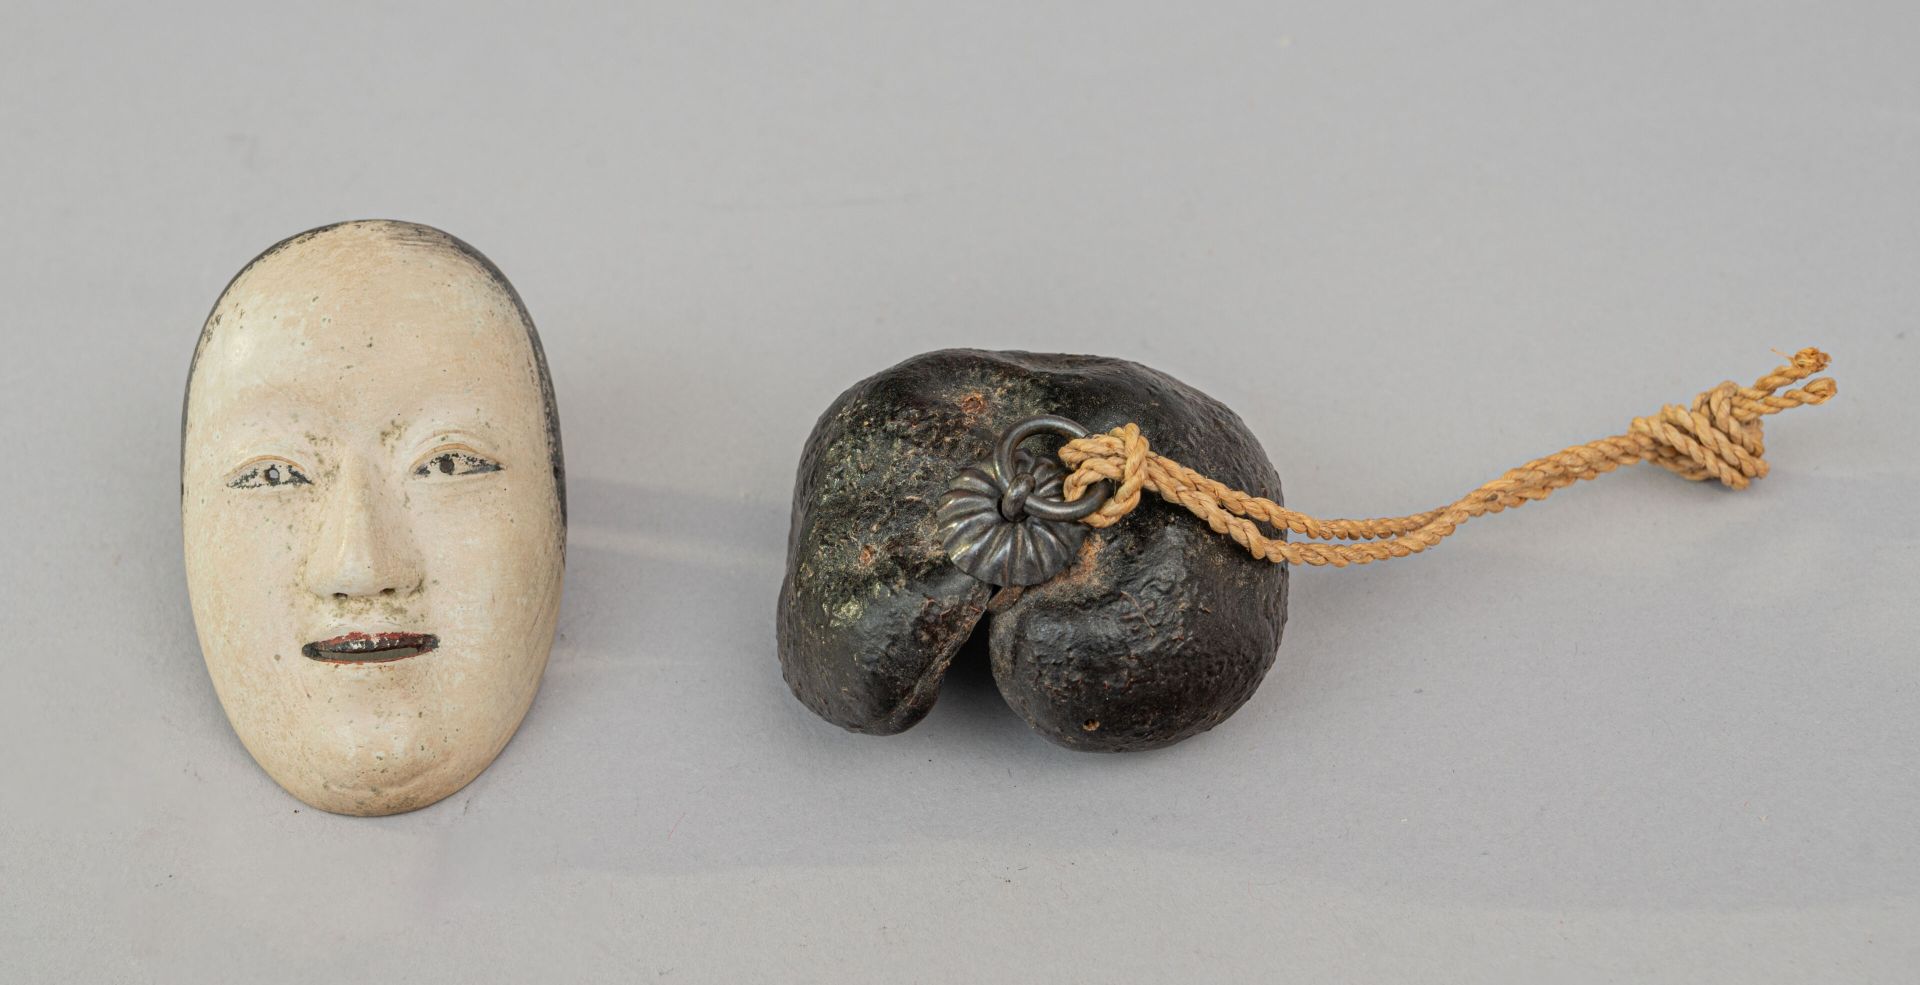 Null Netsuke naturel, Japon, XIXe siècle
Fait d'une grosse graine (ou cosse de h&hellip;